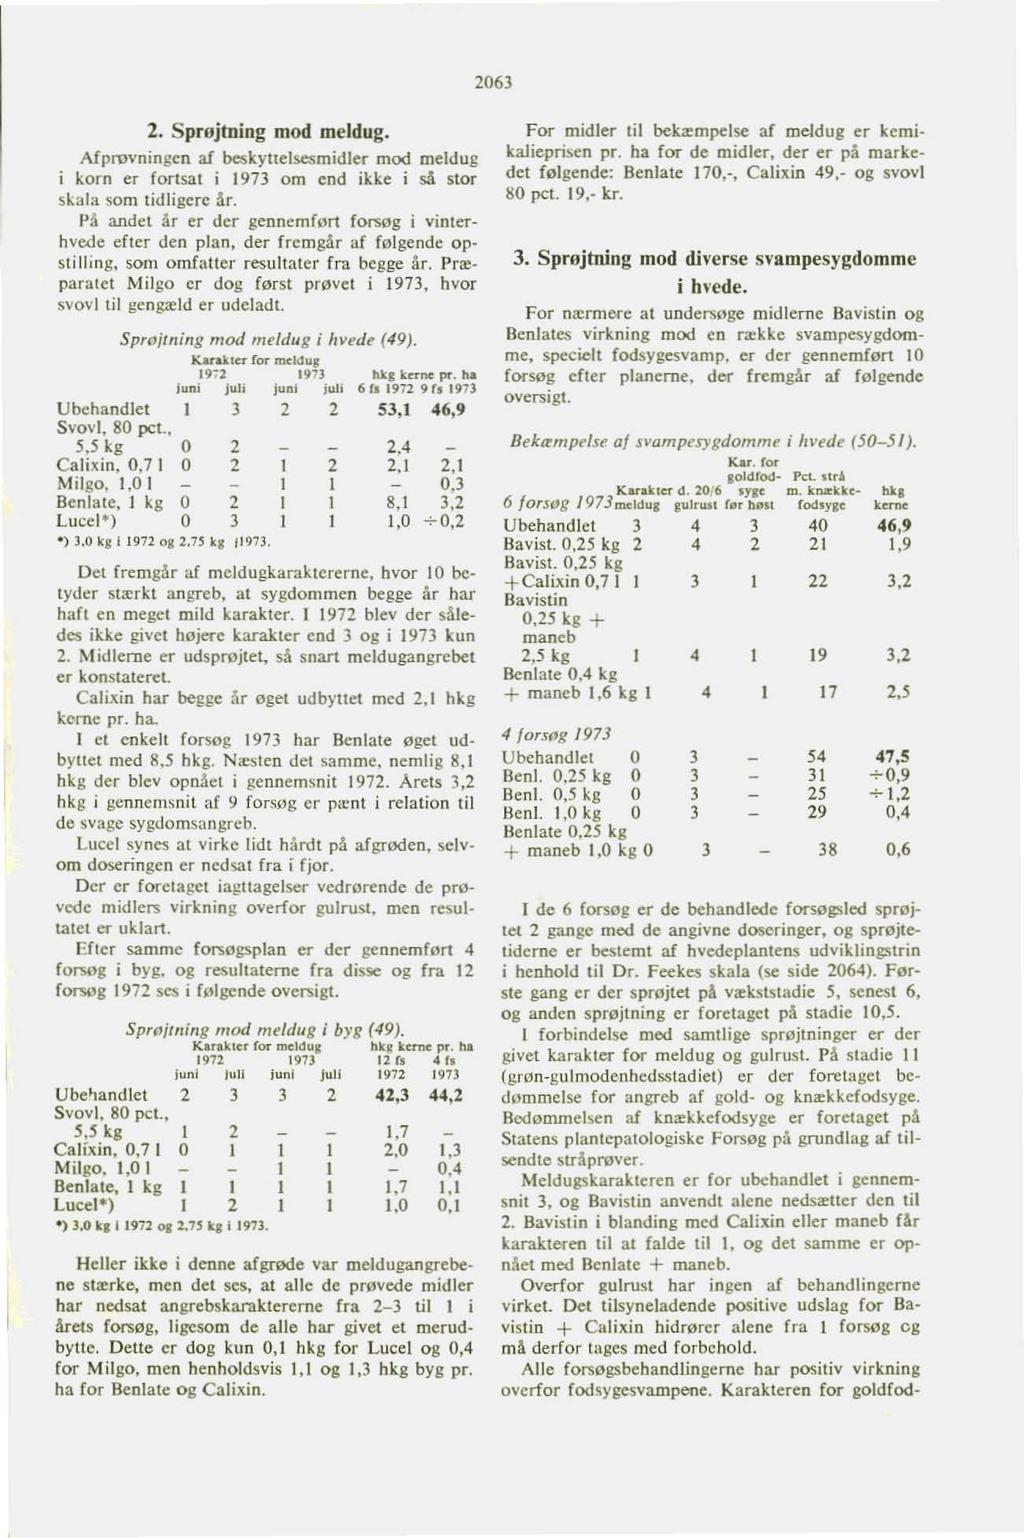 206l 2. Sprojtning mod meldug. Afprovningen af beskyuelsesmidler mod meldug i korn er fortsat i 1973 om end ikke i så stor skala som tidligere <lr.